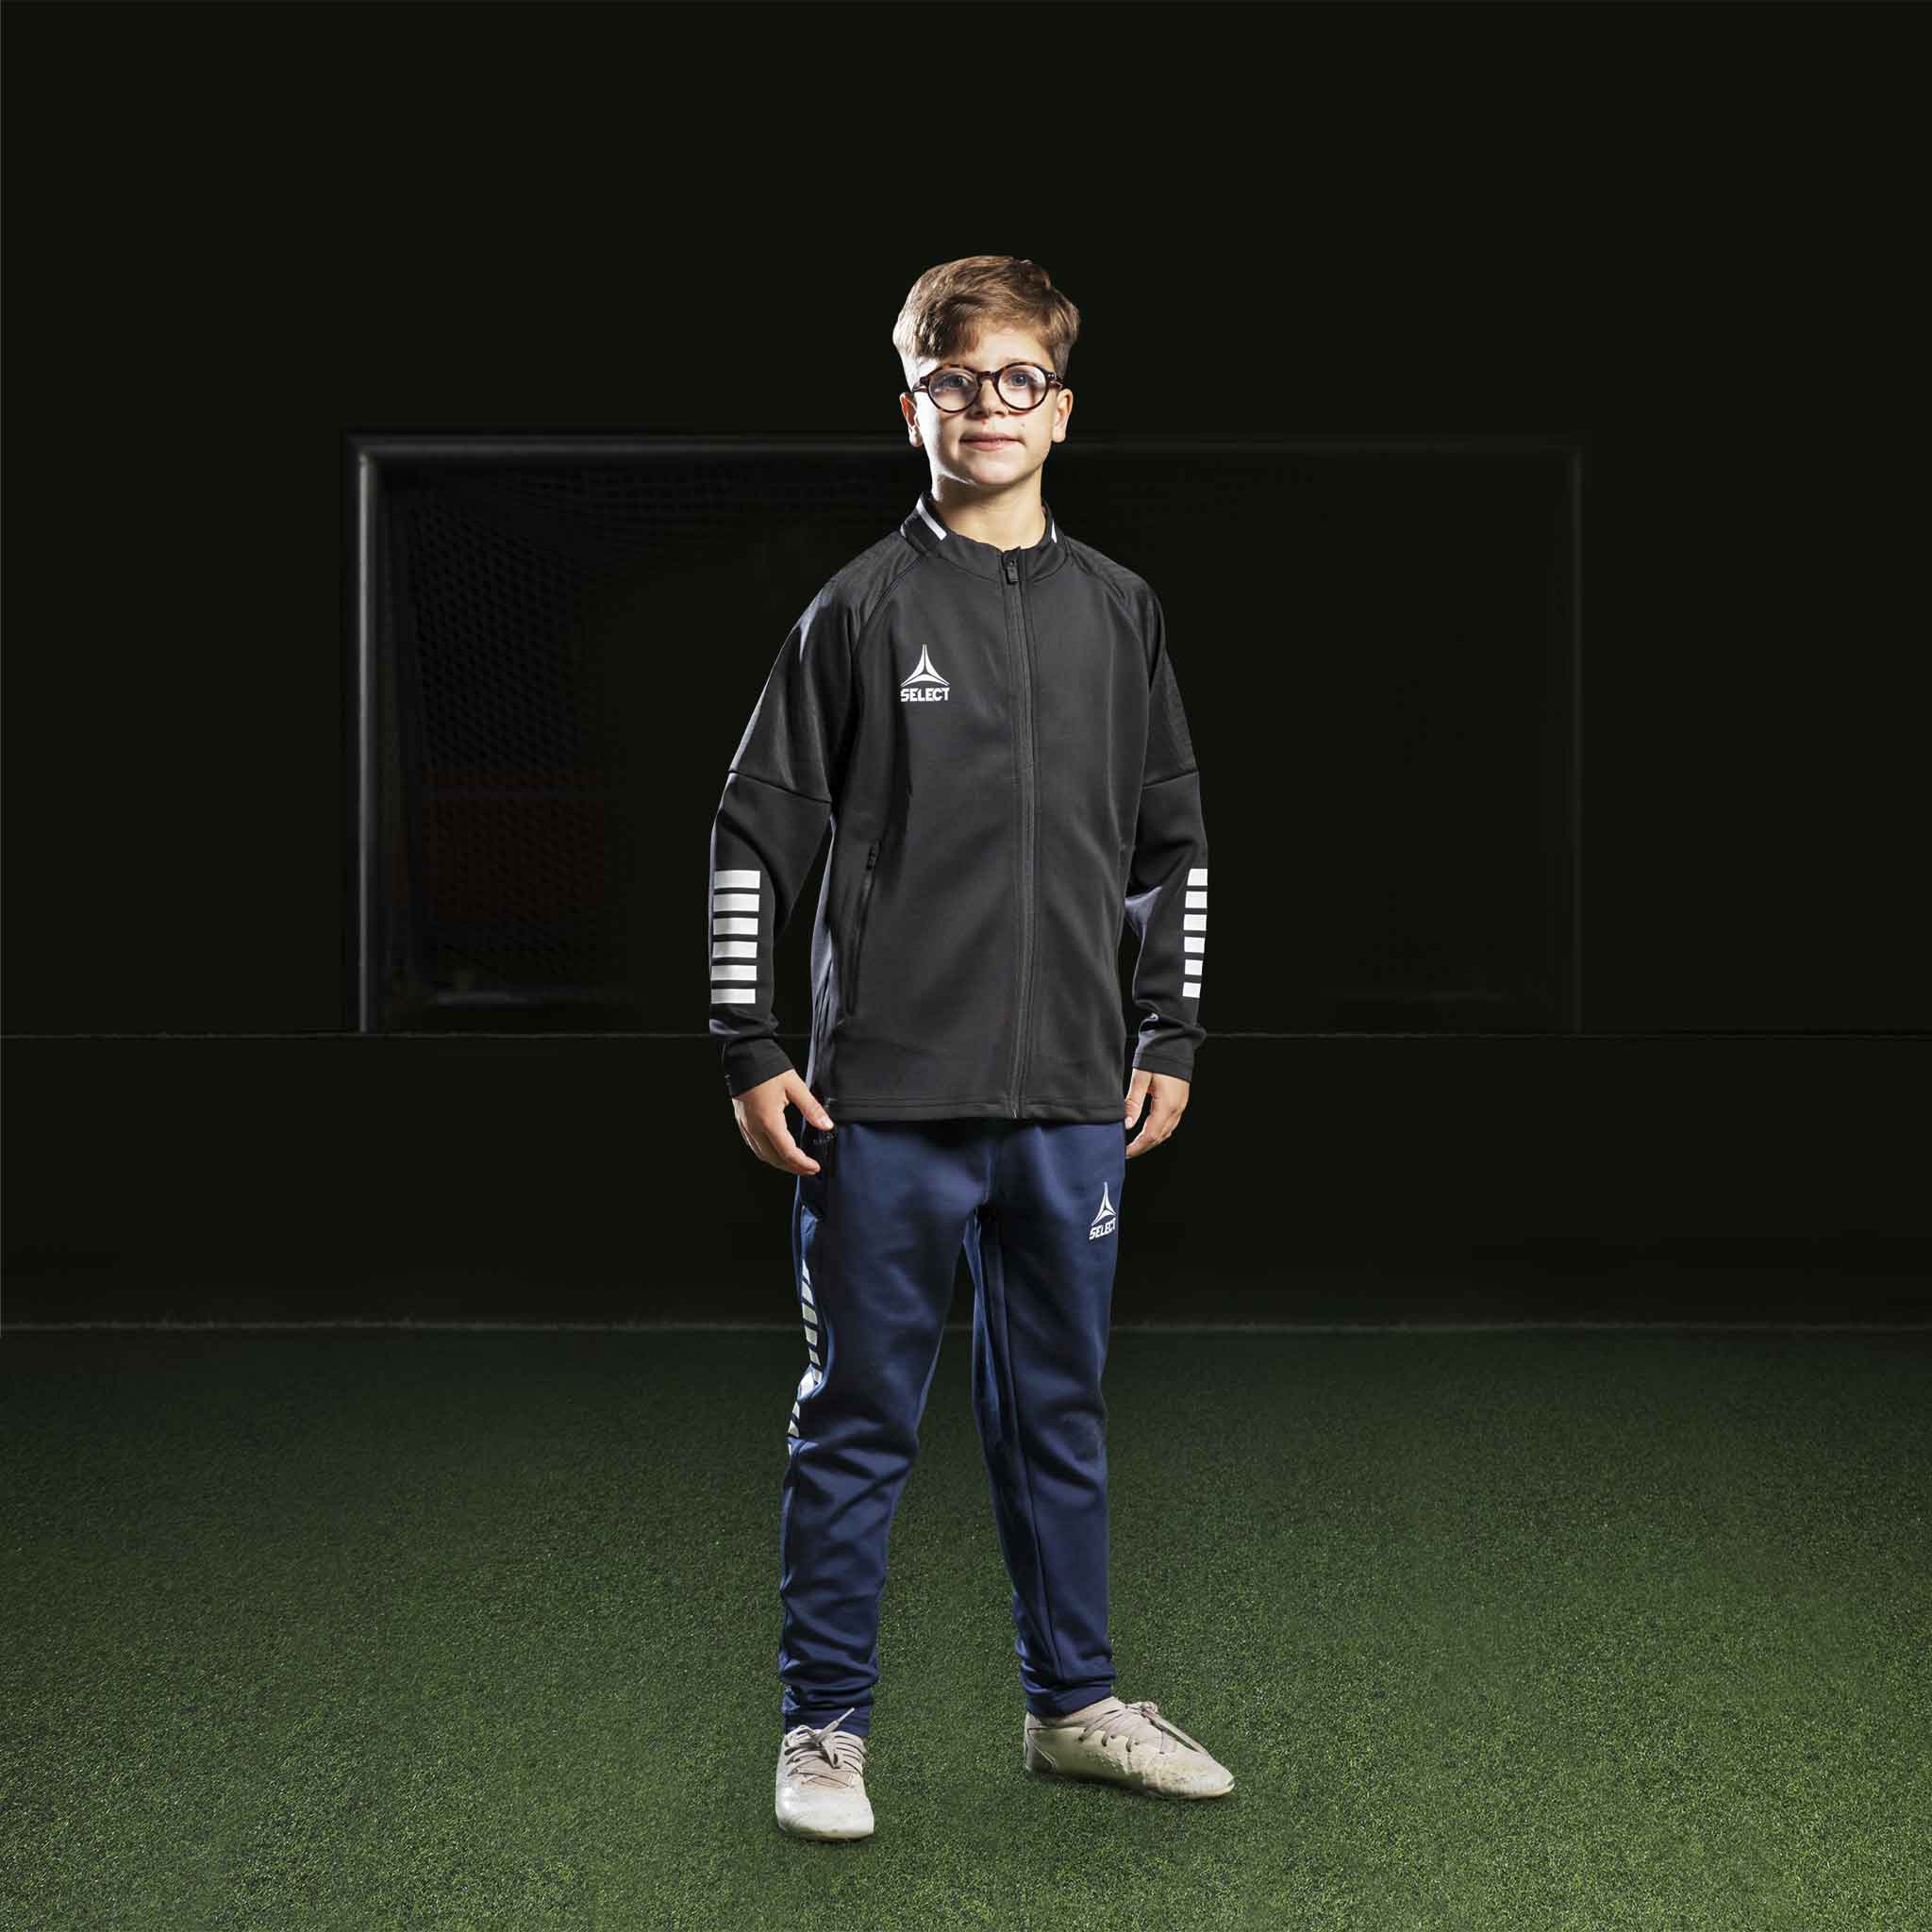 Monaco Zip træningsjakke - Børn #farve_sort/hvid